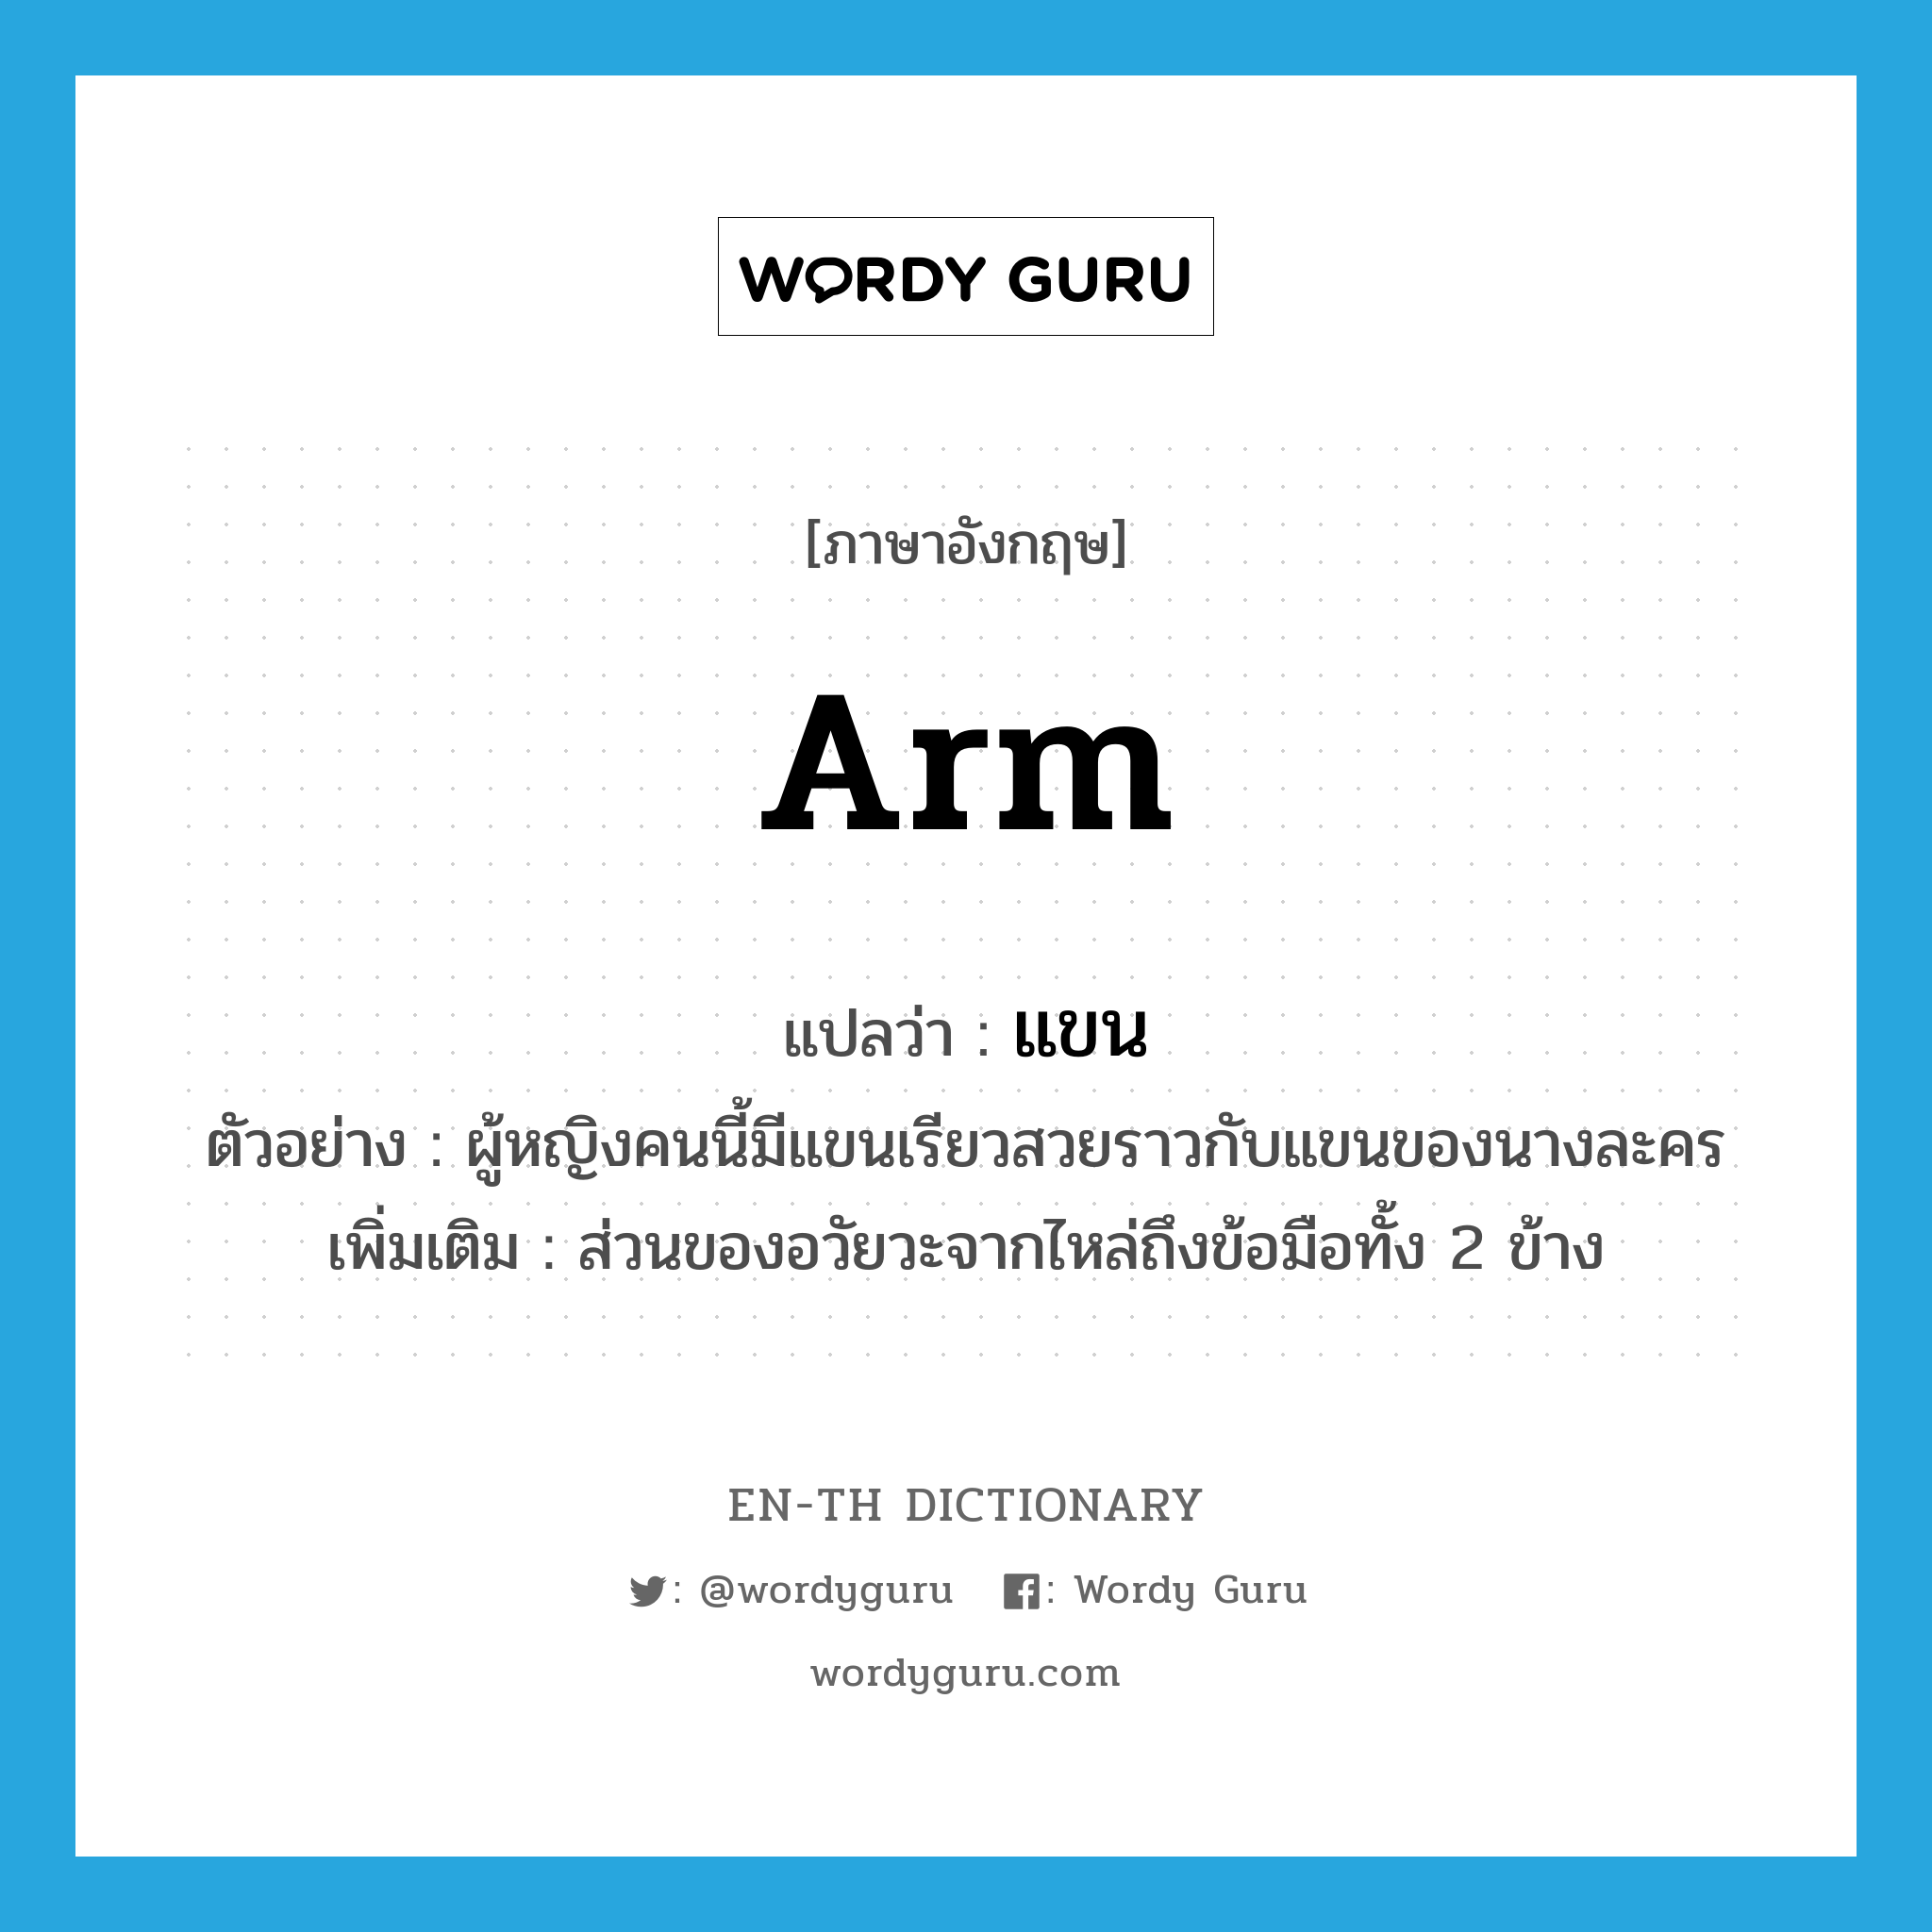 arm แปลว่า?, คำศัพท์ภาษาอังกฤษ arm แปลว่า แขน ประเภท N ตัวอย่าง ผู้หญิงคนนี้มีแขนเรียวสวยราวกับแขนของนางละคร เพิ่มเติม ส่วนของอวัยวะจากไหล่ถึงข้อมือทั้ง 2 ข้าง หมวด N